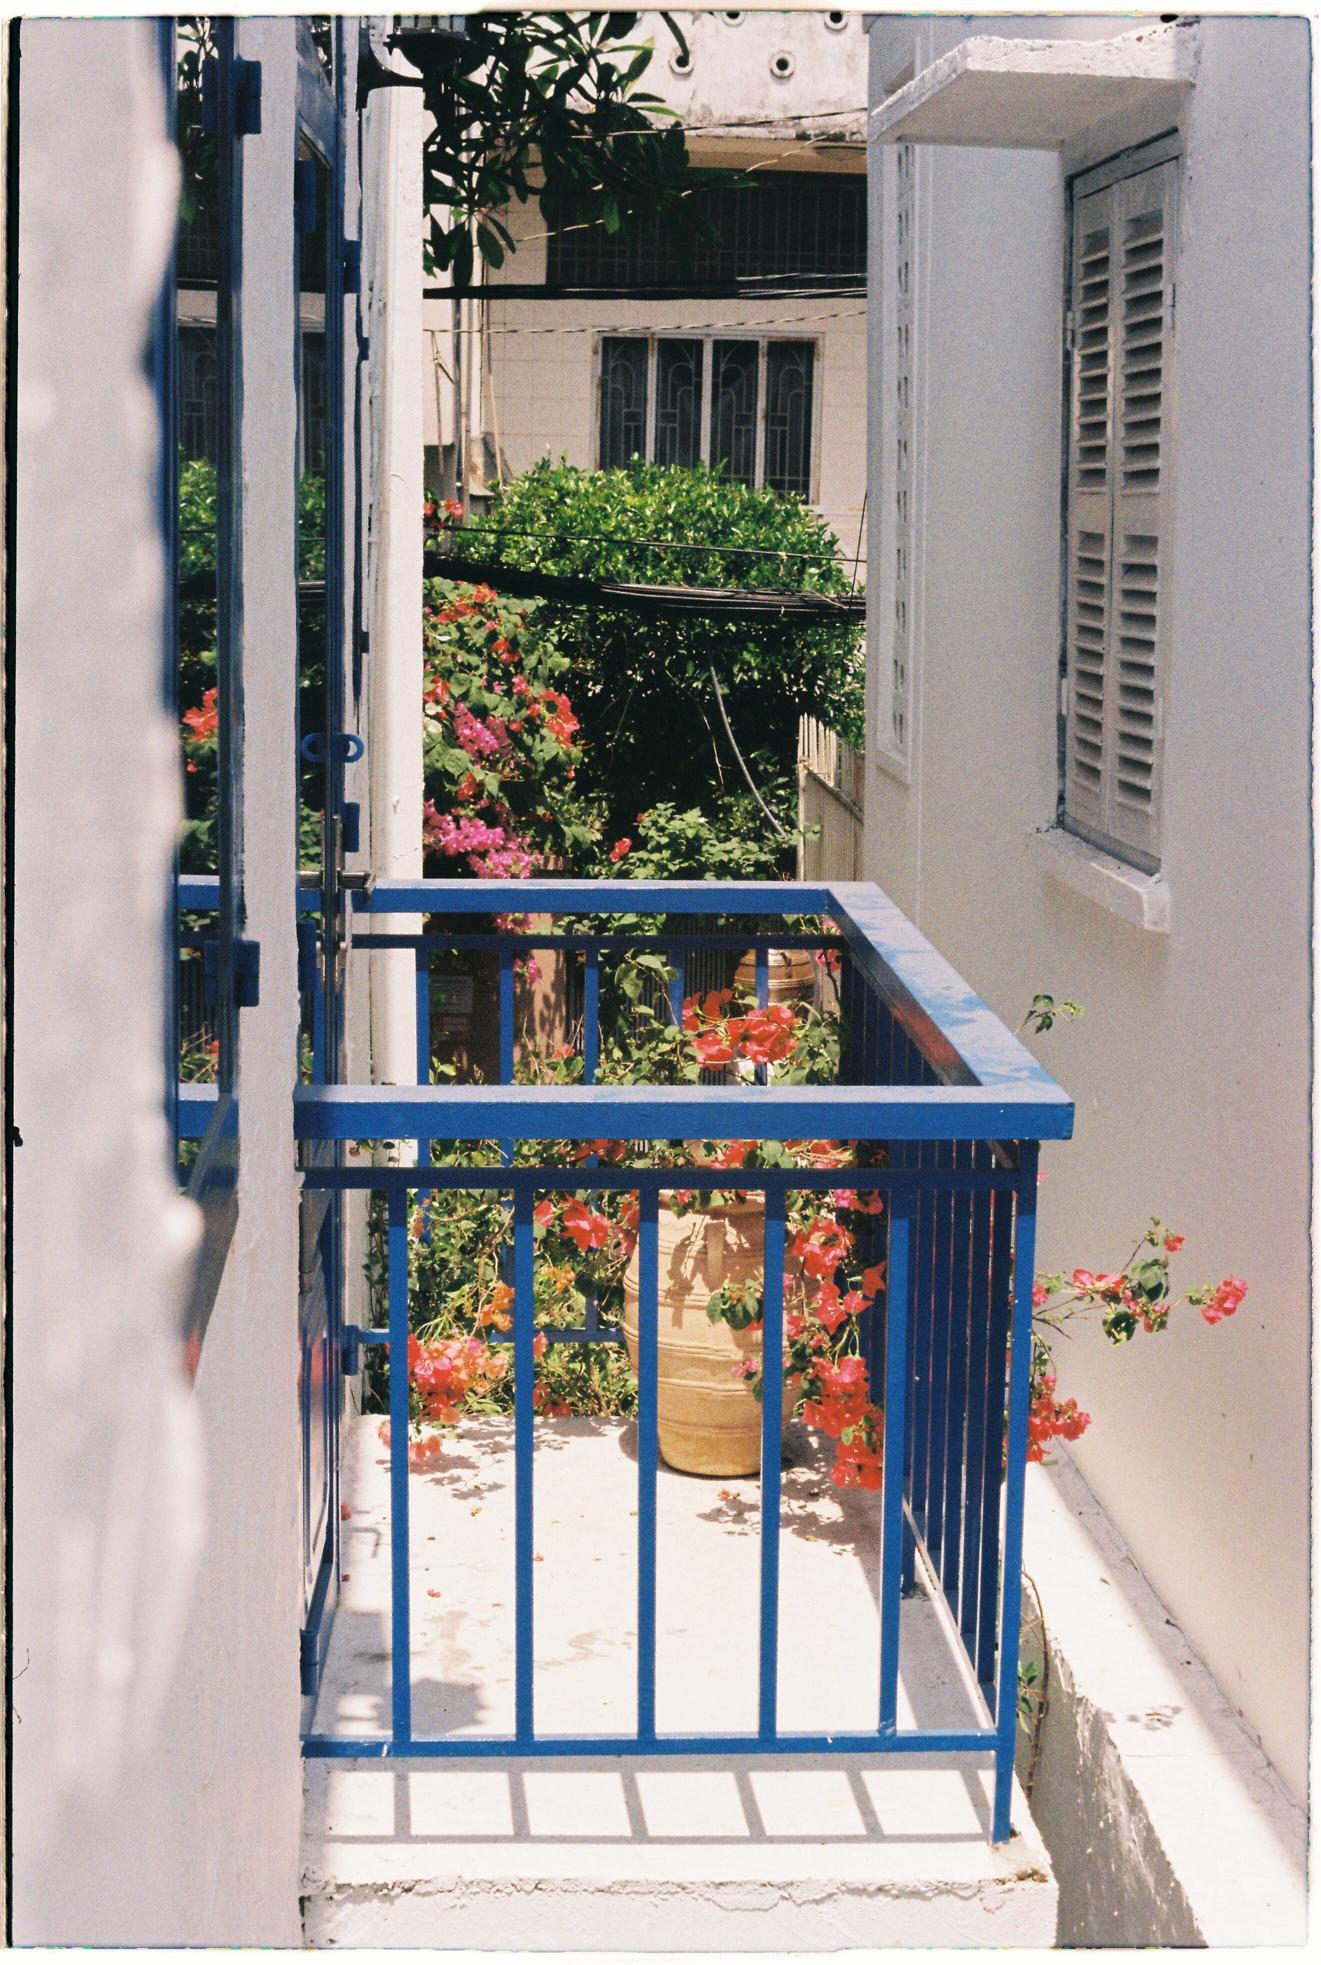 Kwiaty balkonowe nie wymagające dużo słońca – idealne dla zacienionych balkonów